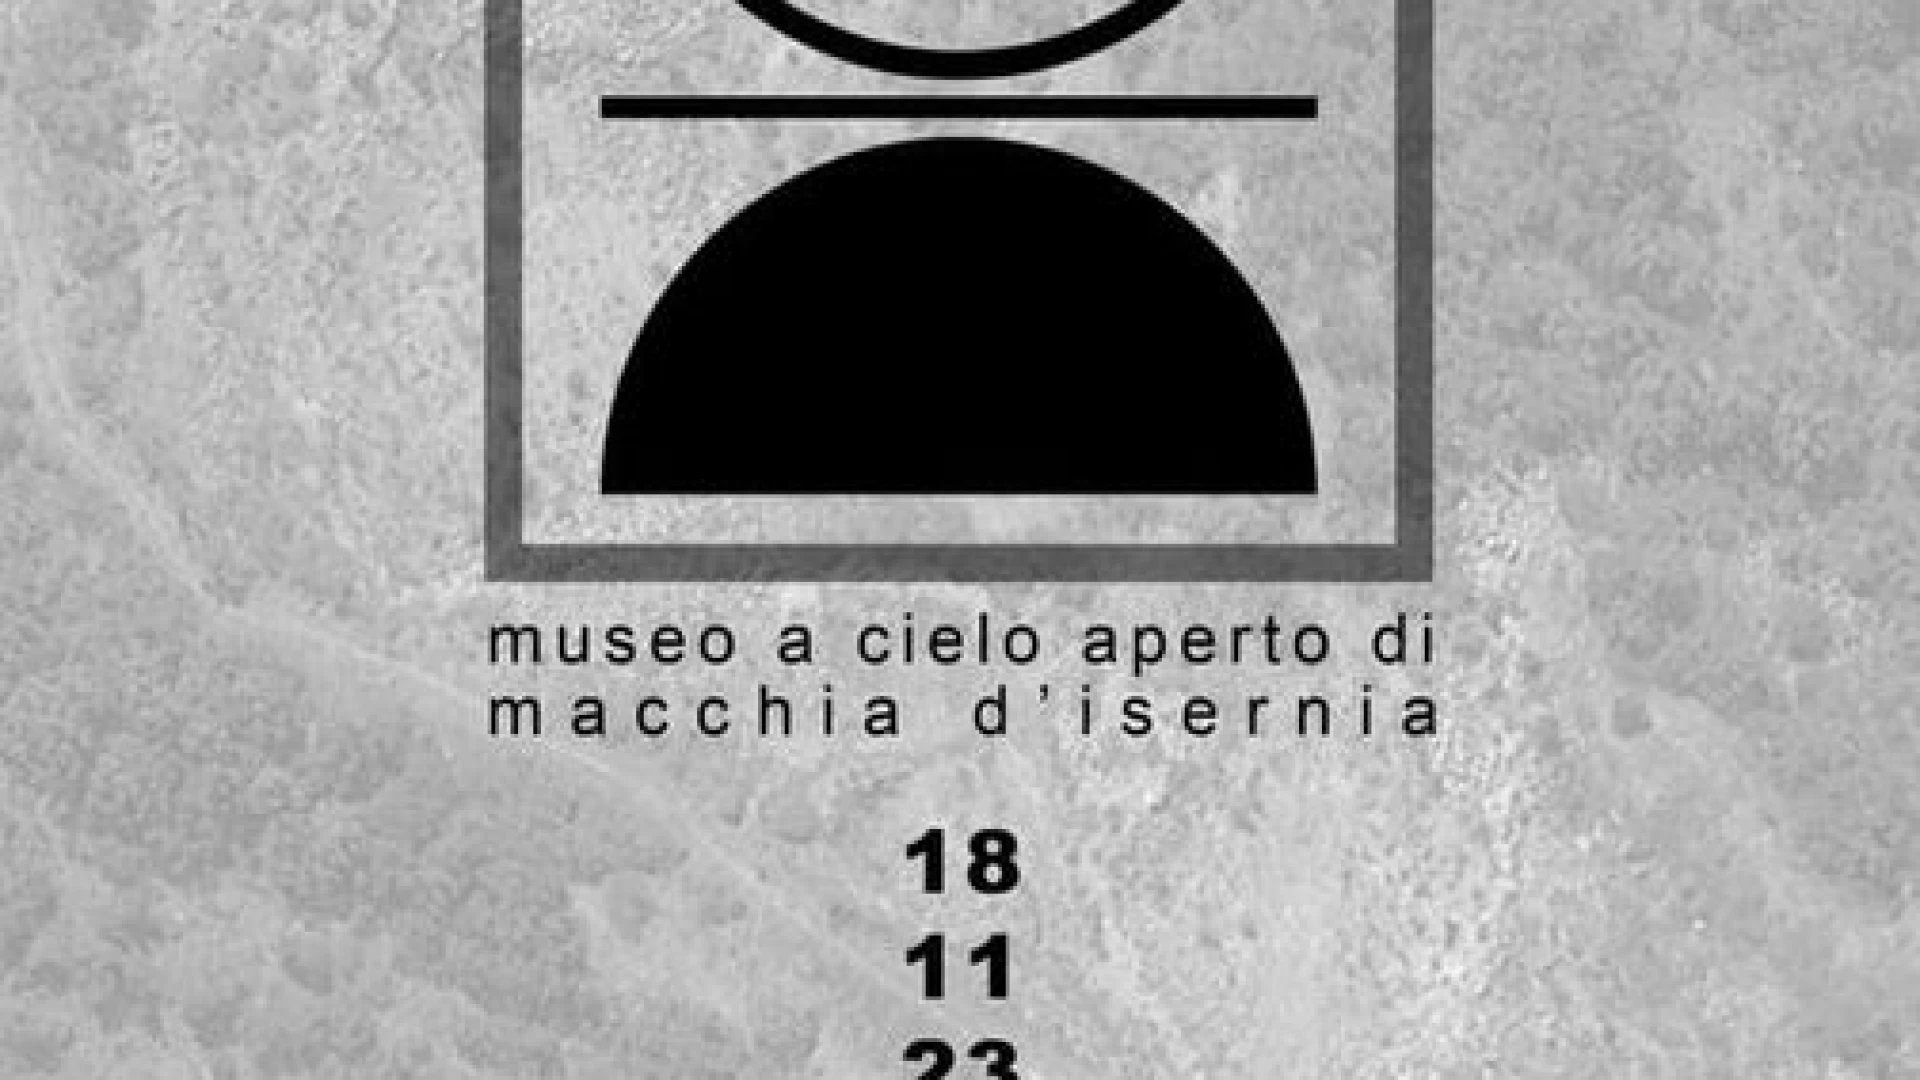 Macchia d'Isernia: nasce TerraCielo, museo a cielo aperto. L'inaugurazione sabato 18 novembre.